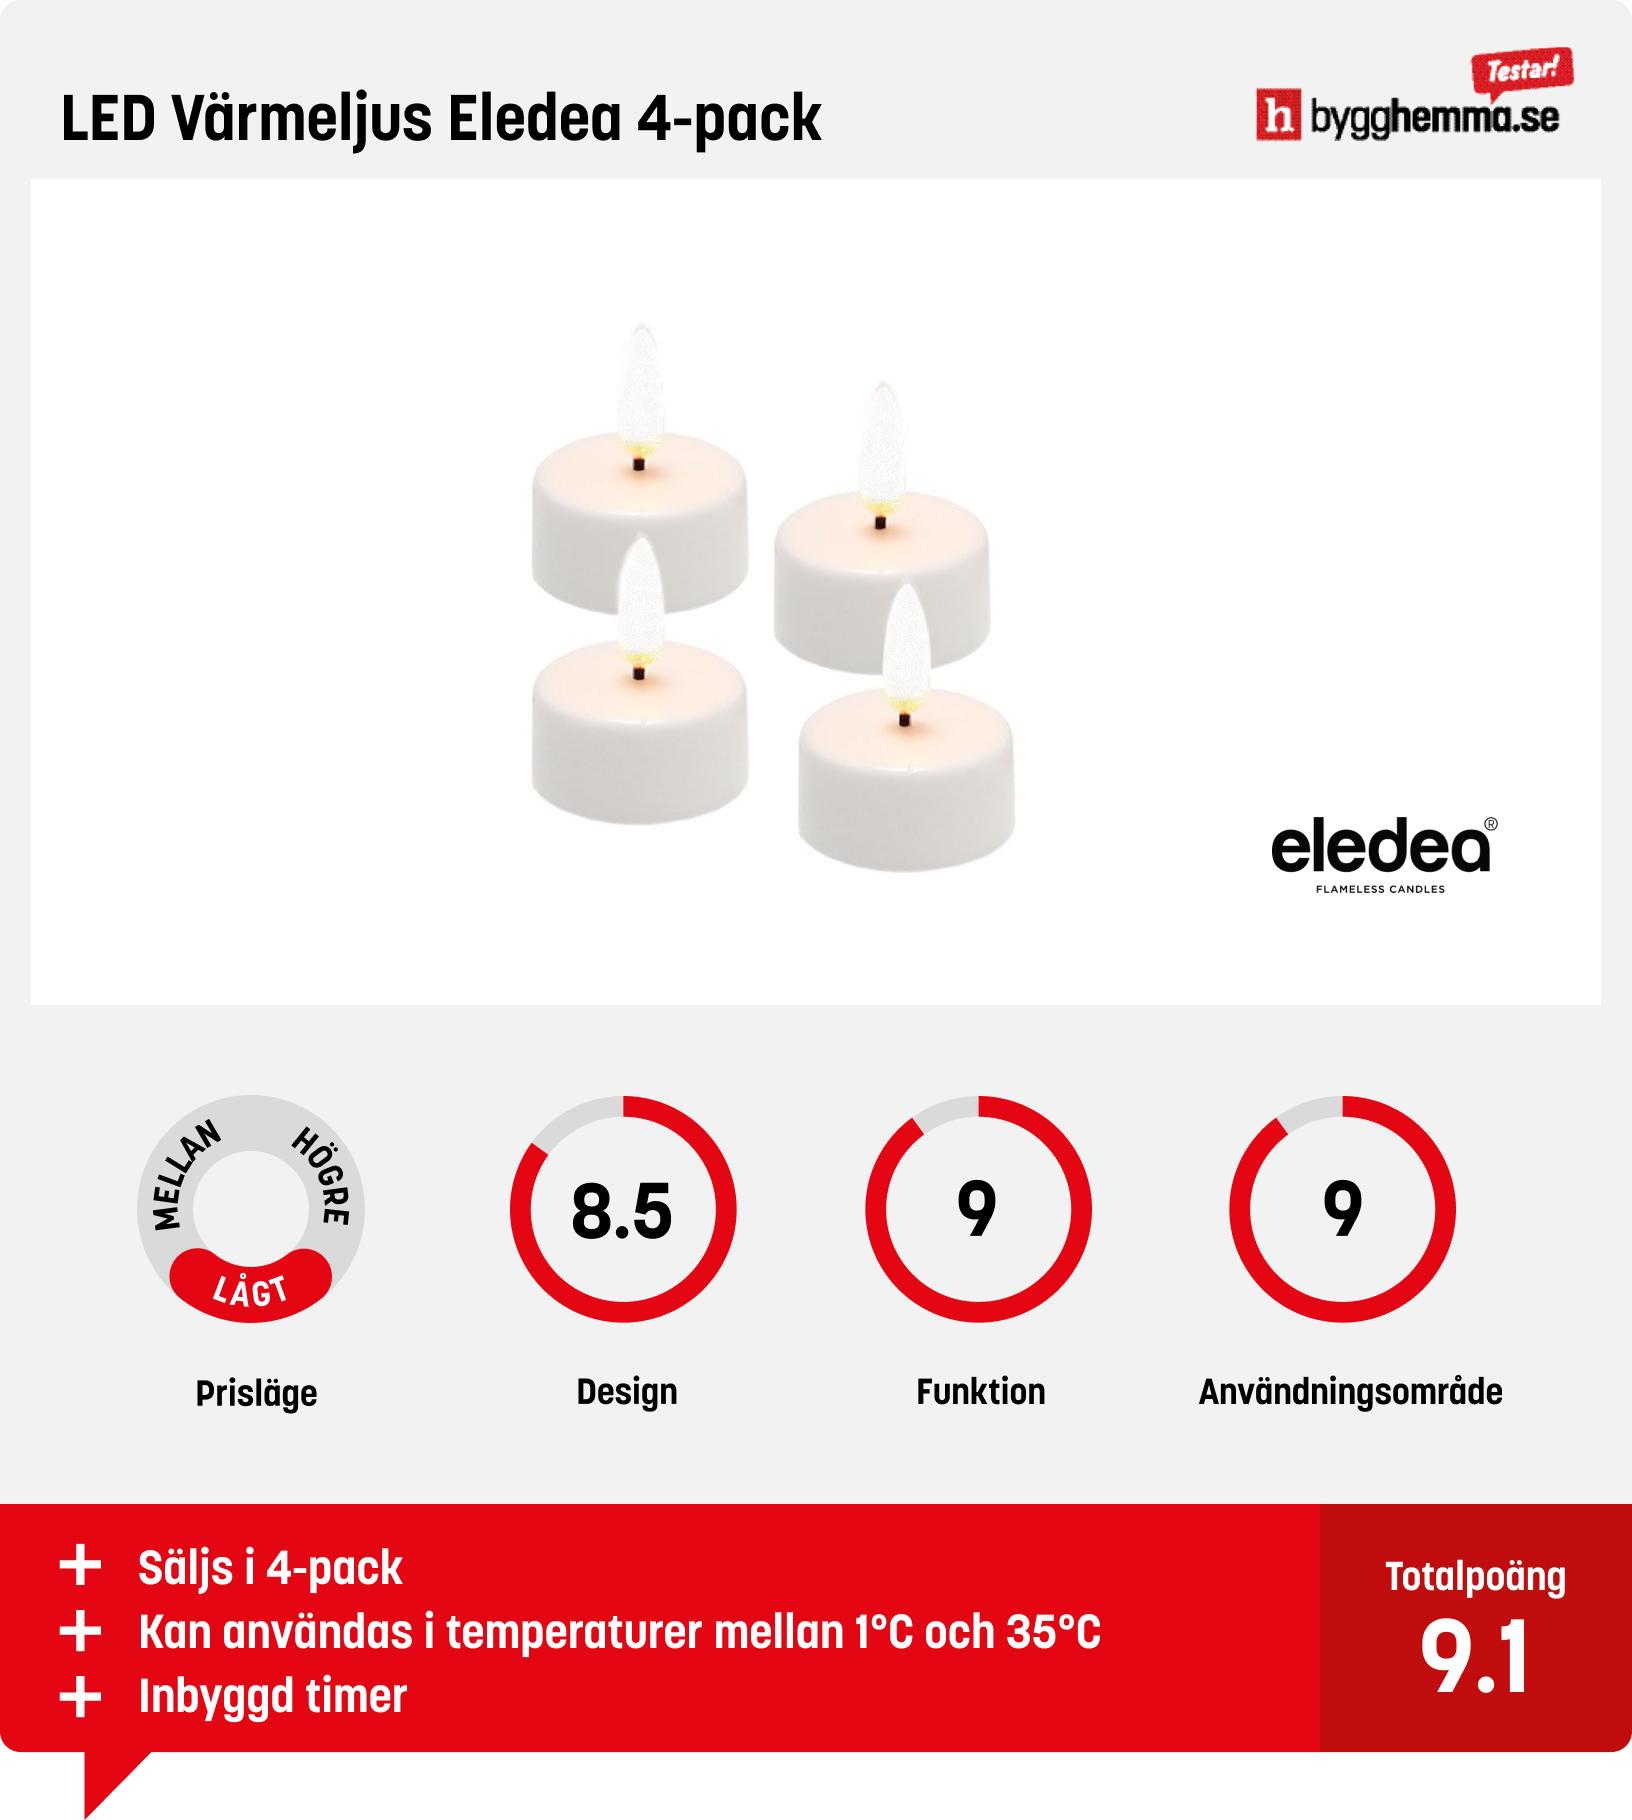 Batteriljus bäst i test - LED Värmeljus Eledea 4-pack